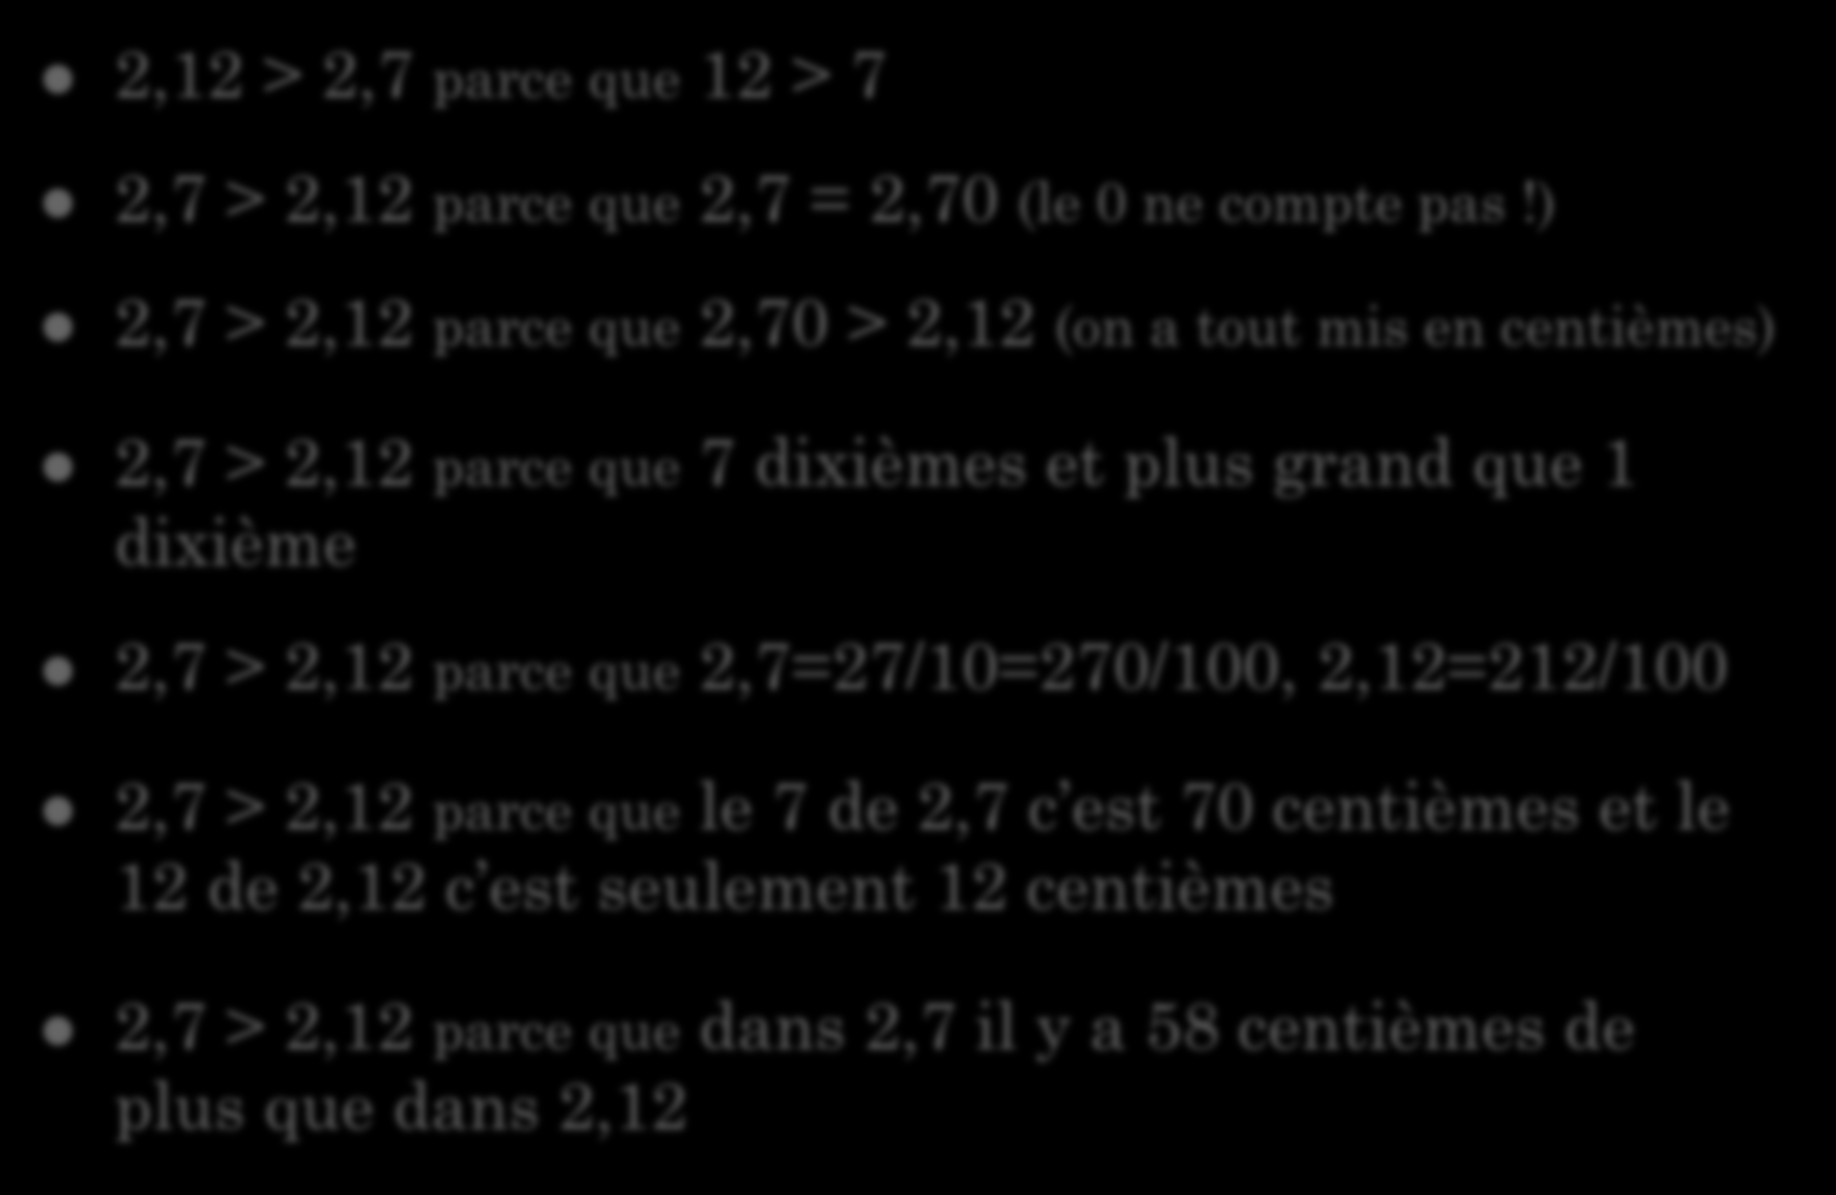 2,12 > 2,7 parce que 12 > 7 Exemples d'arguments 2,7 > 2,12 parce que 2,7 = 2,70 (le 0 ne compte pas!